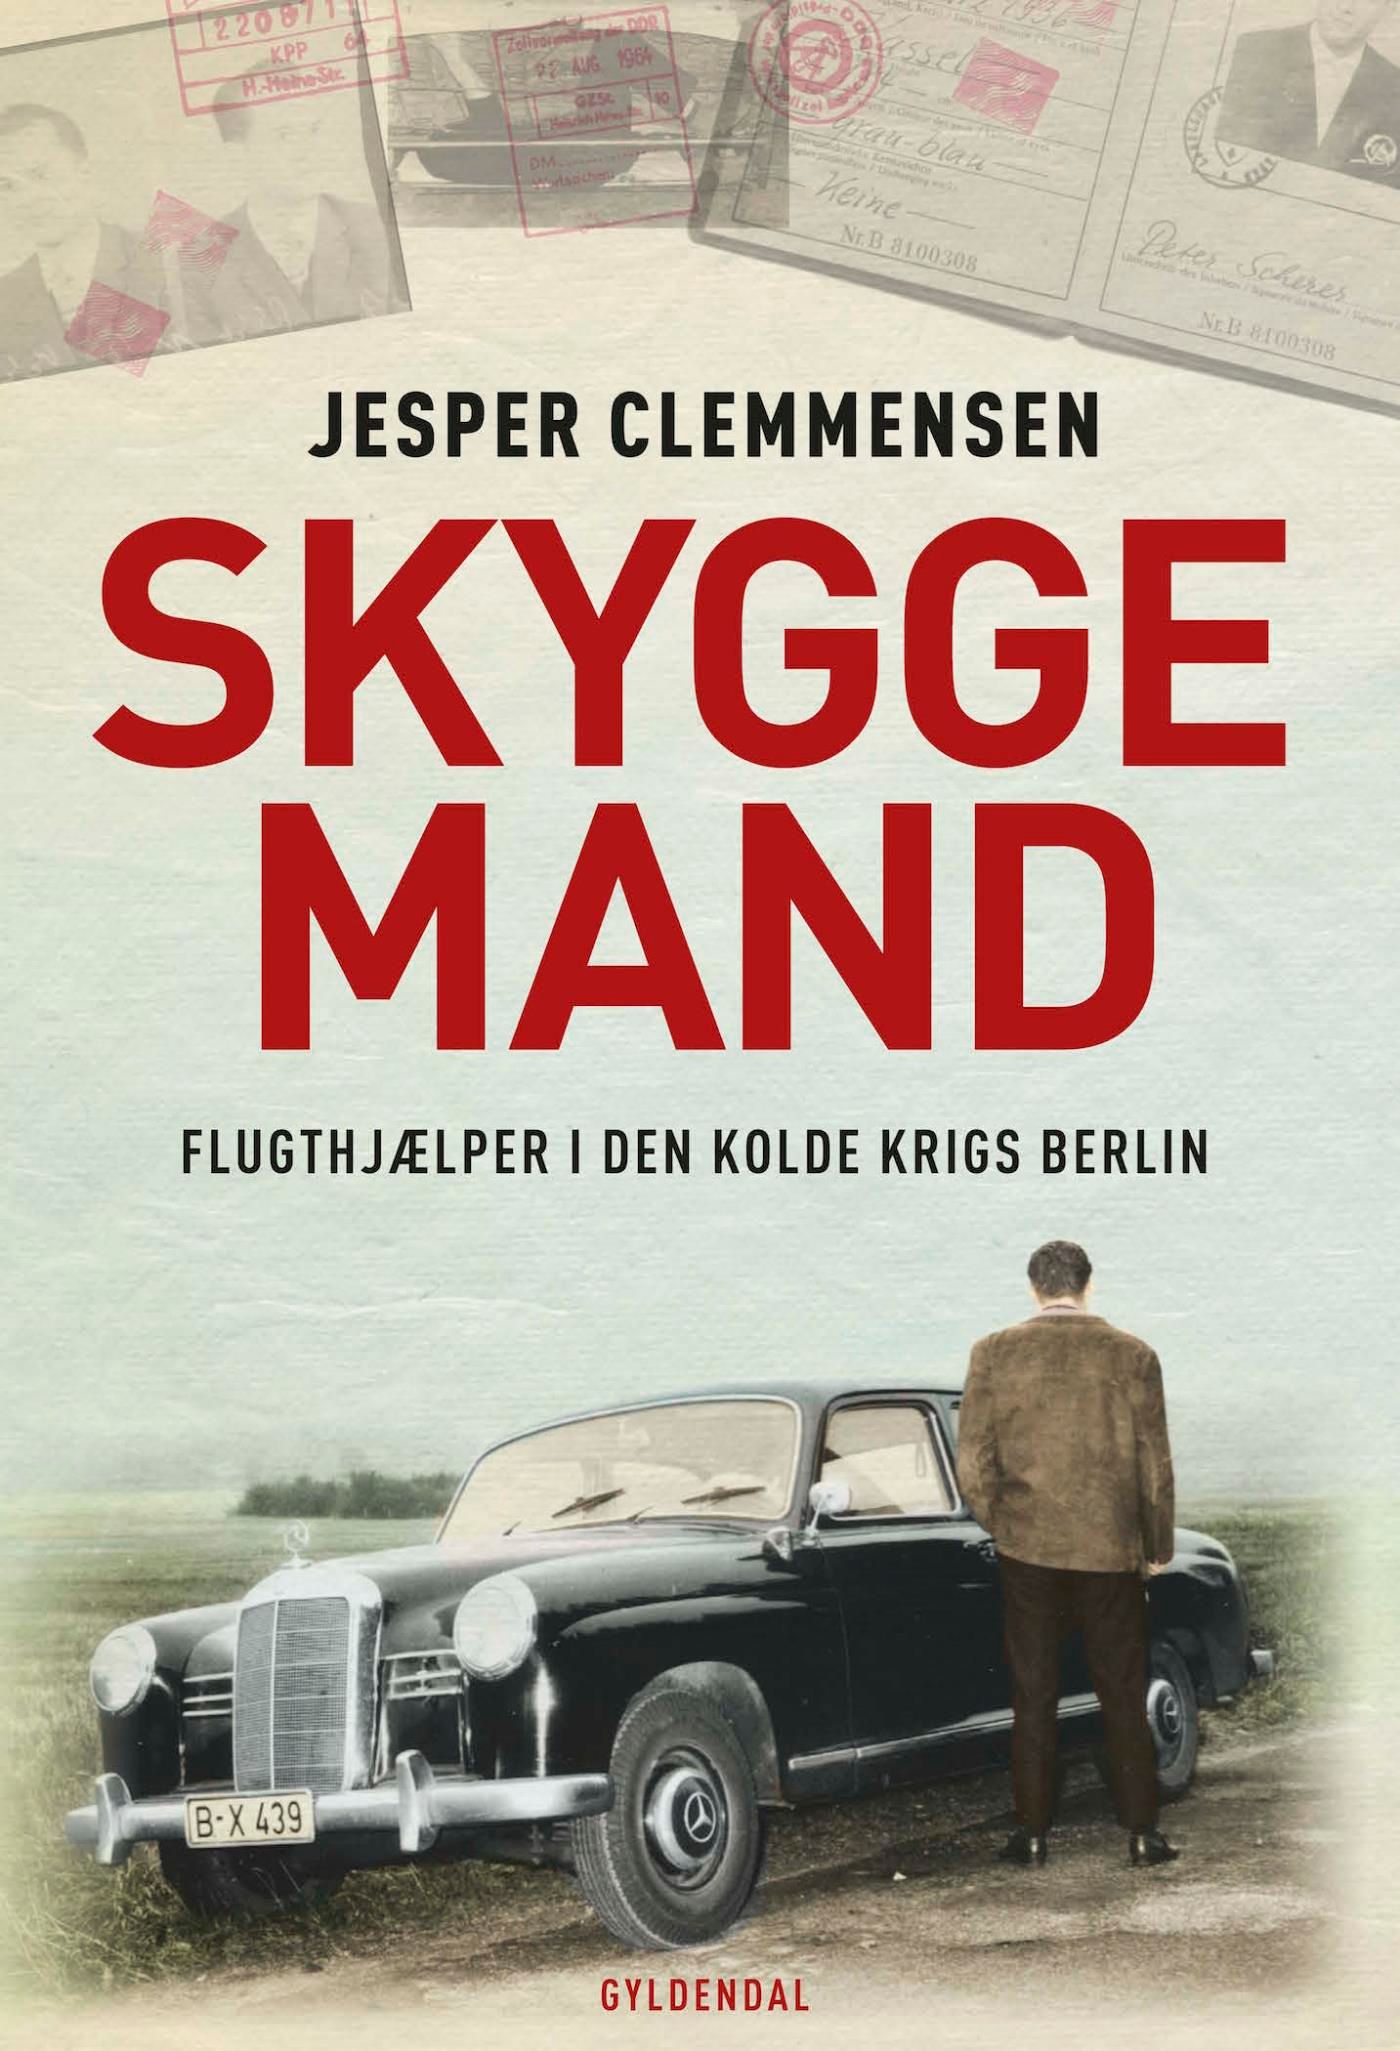 Skyggemand, e-bok av Jesper Clemmensen